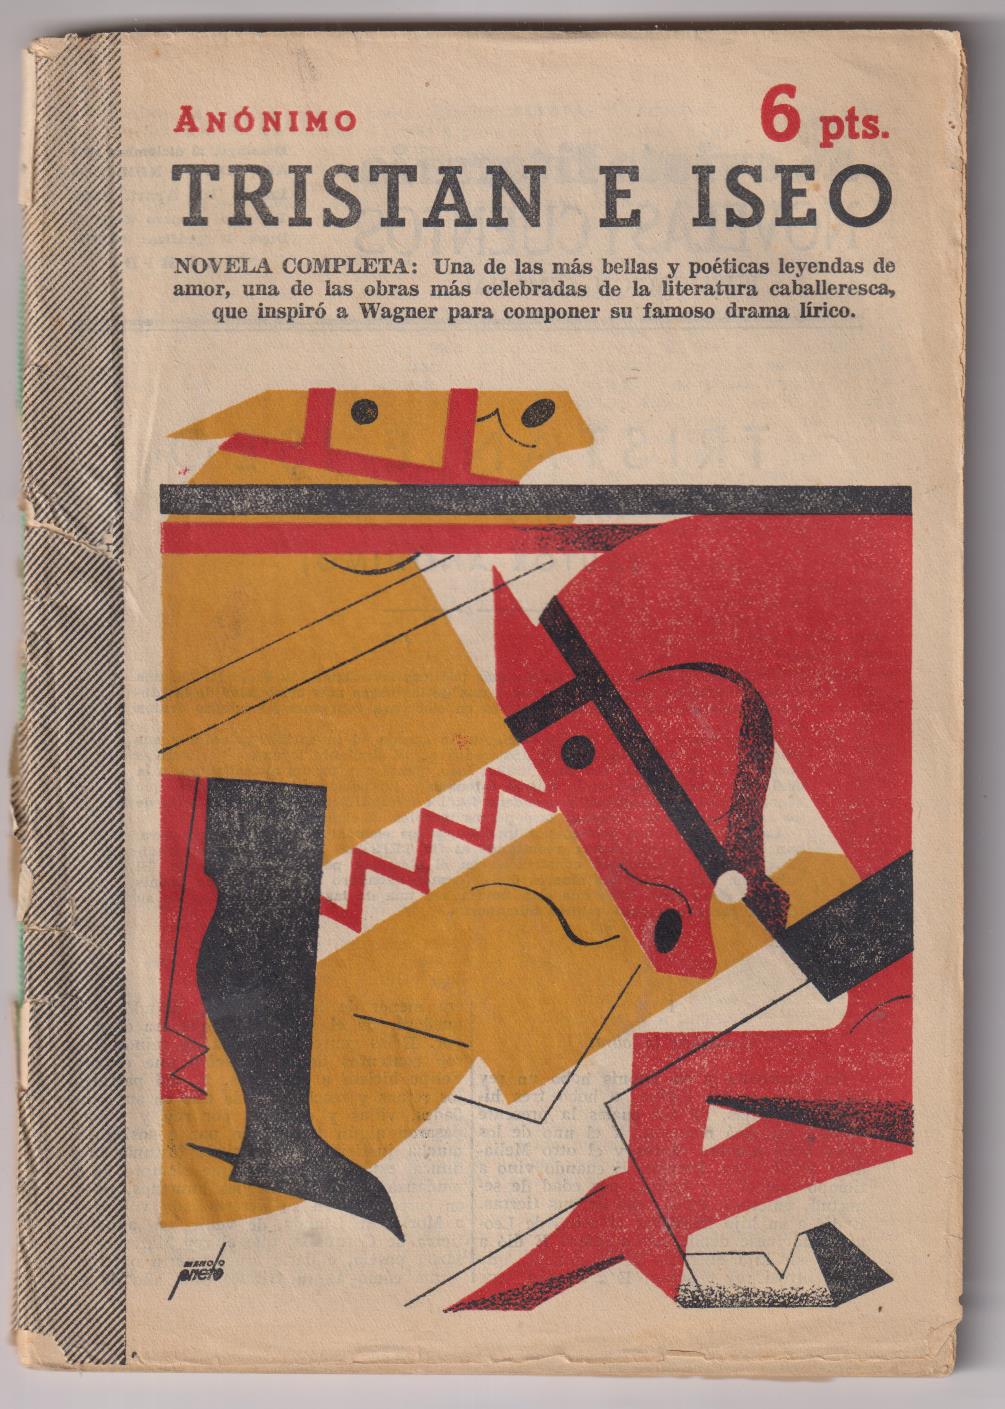 Revista Literaria Novelas y Cuentos nº 1129. Tristán e Iseo. Anónimo. Año 1952